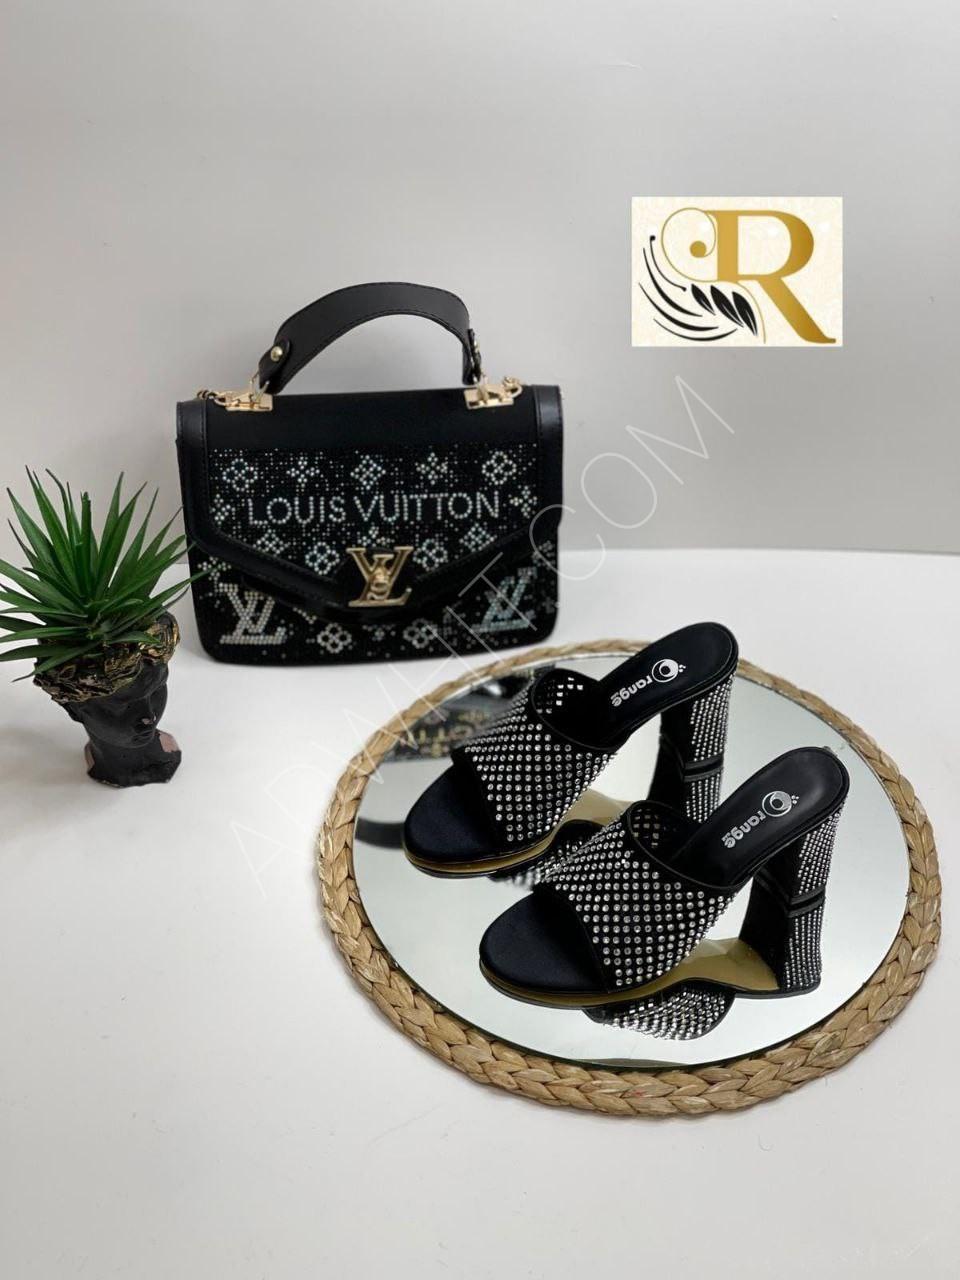 Louis Vuitton, Bags, Louis Vuitton Purse And Shoes Set